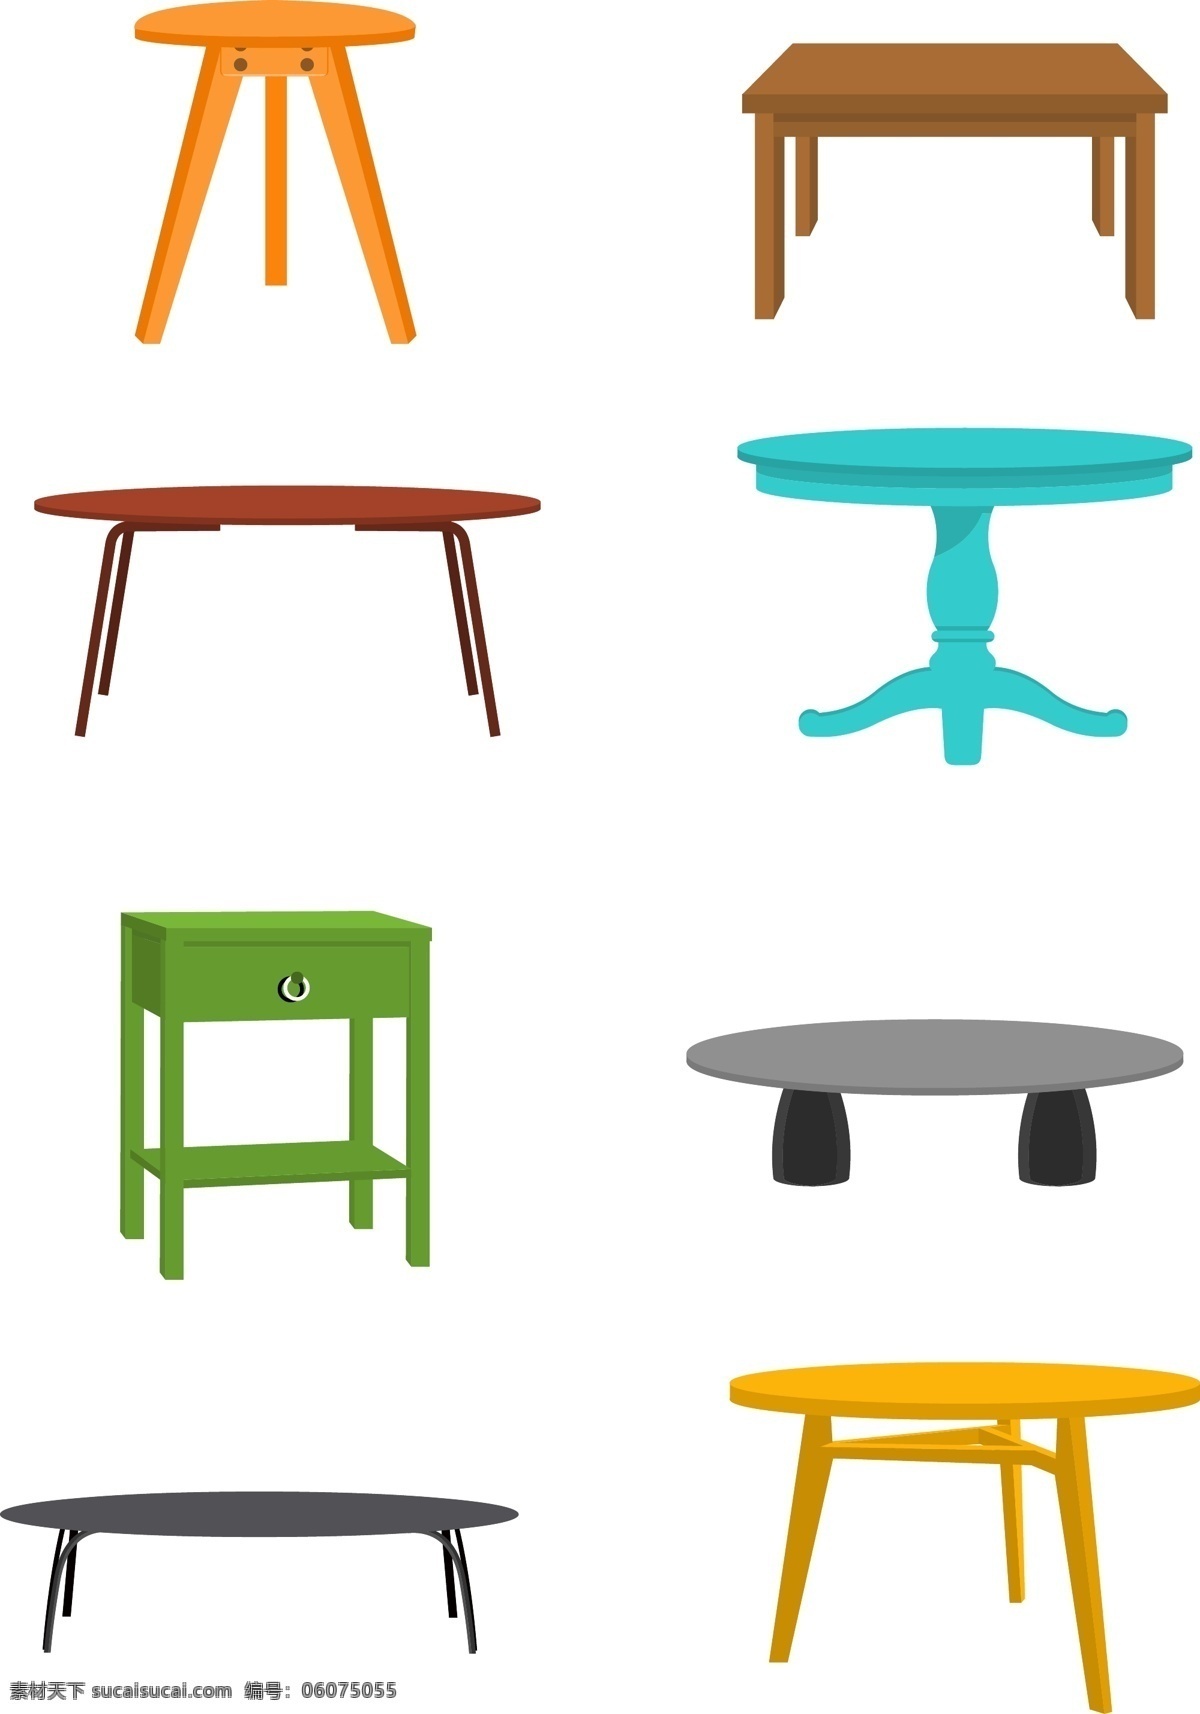 北欧 风格 家具家居 简约 桌子 家具设计 家居 图标元素